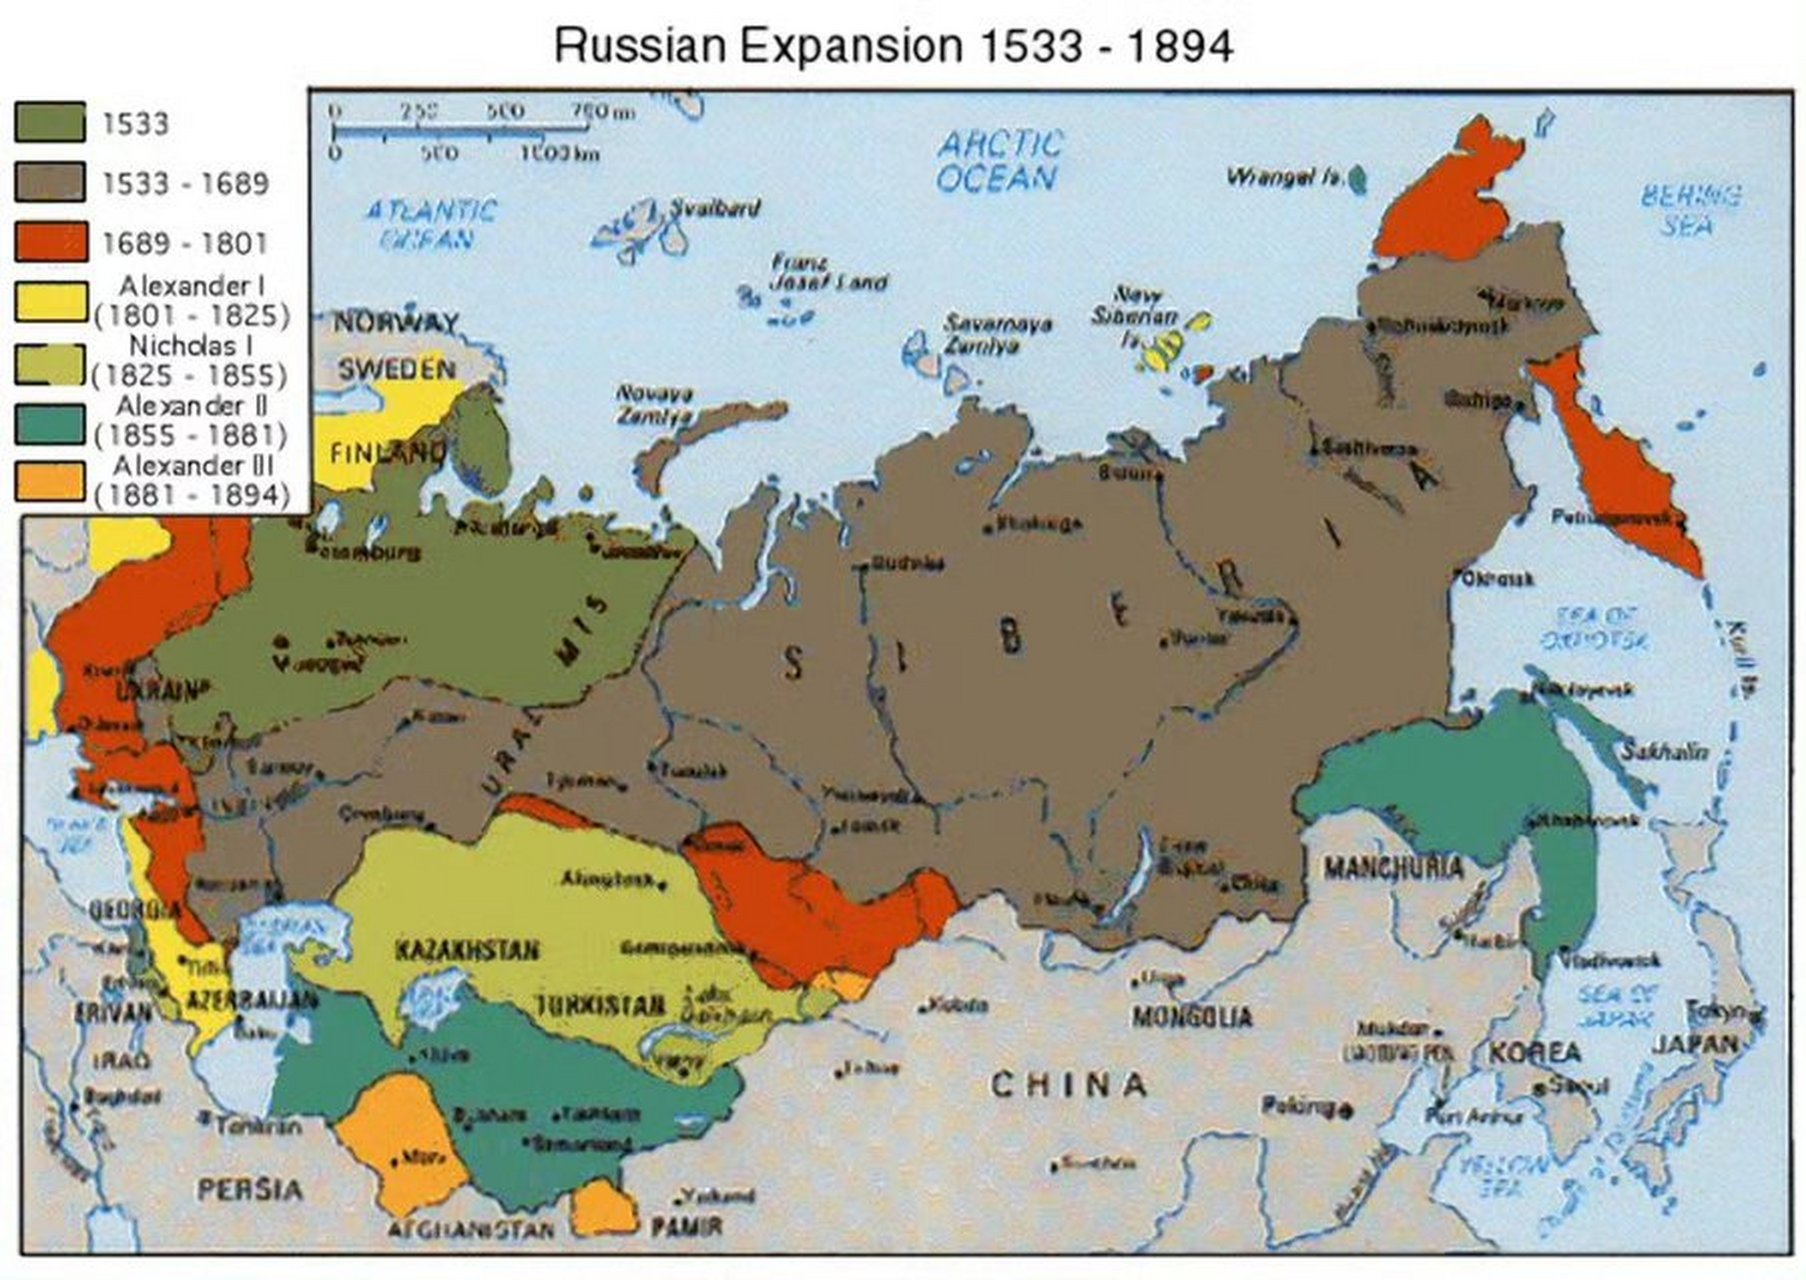 俄罗斯9396疆域历史变迁示意图 从 16 世纪开始,俄罗斯在 150 年